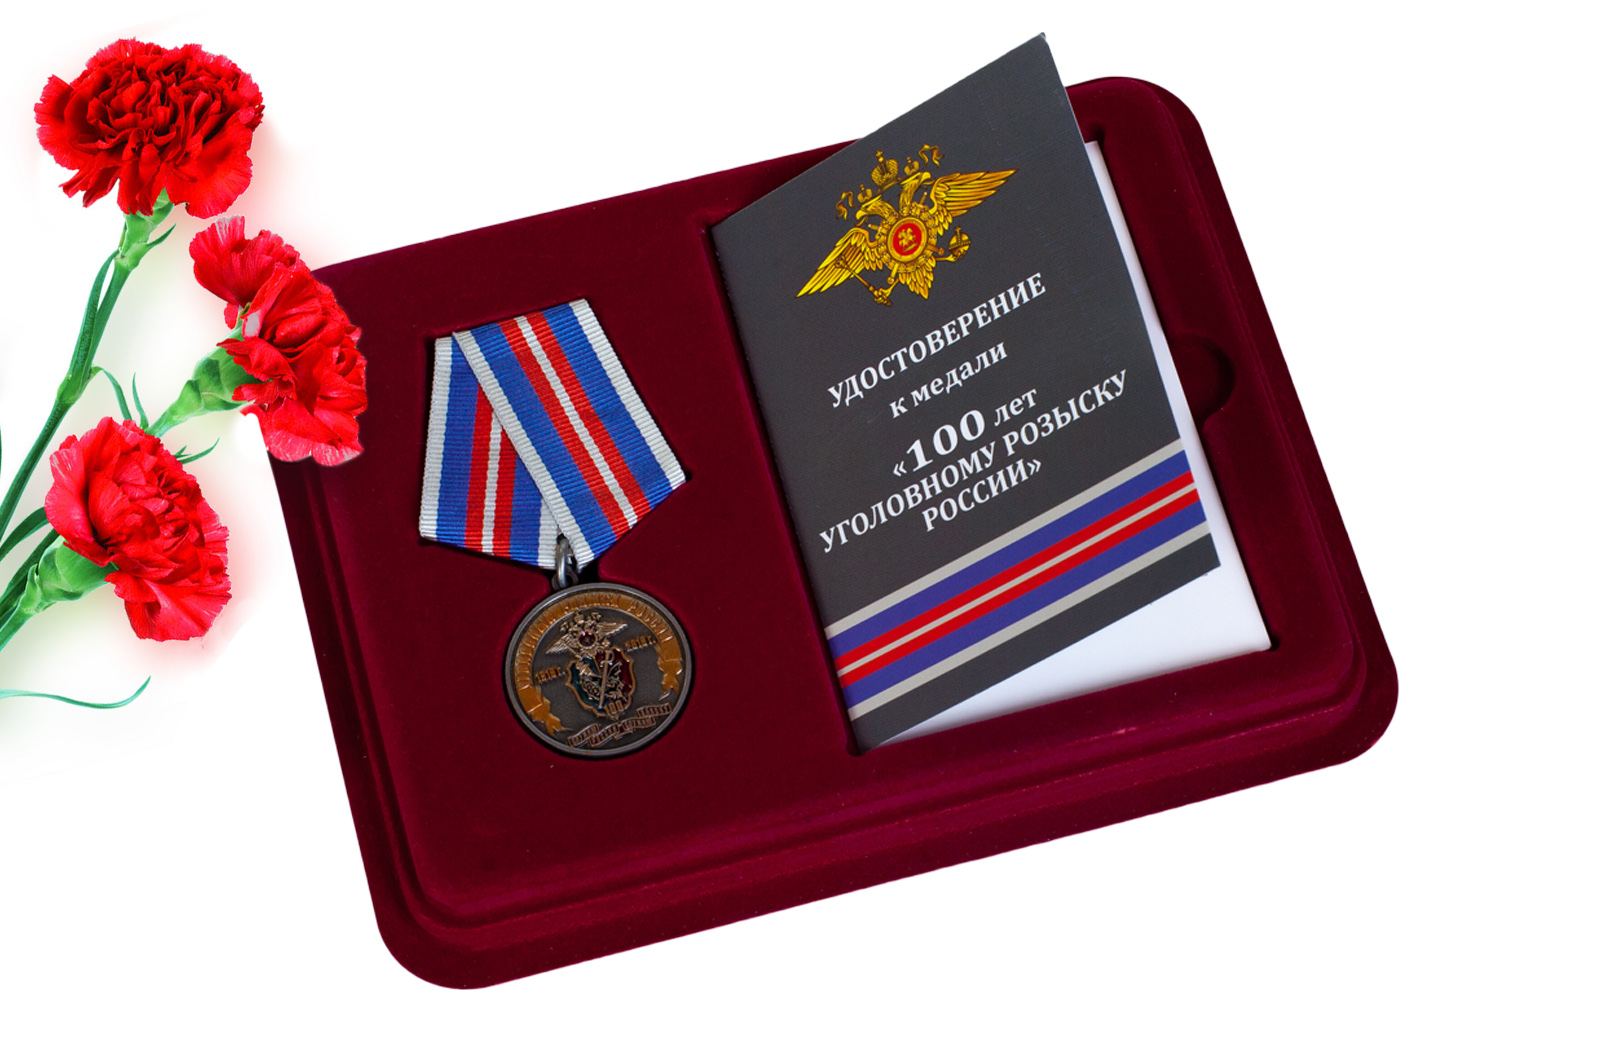 Купить юбилейную медаль 100 лет Уголовному розыску России 1918-2018 онлайн